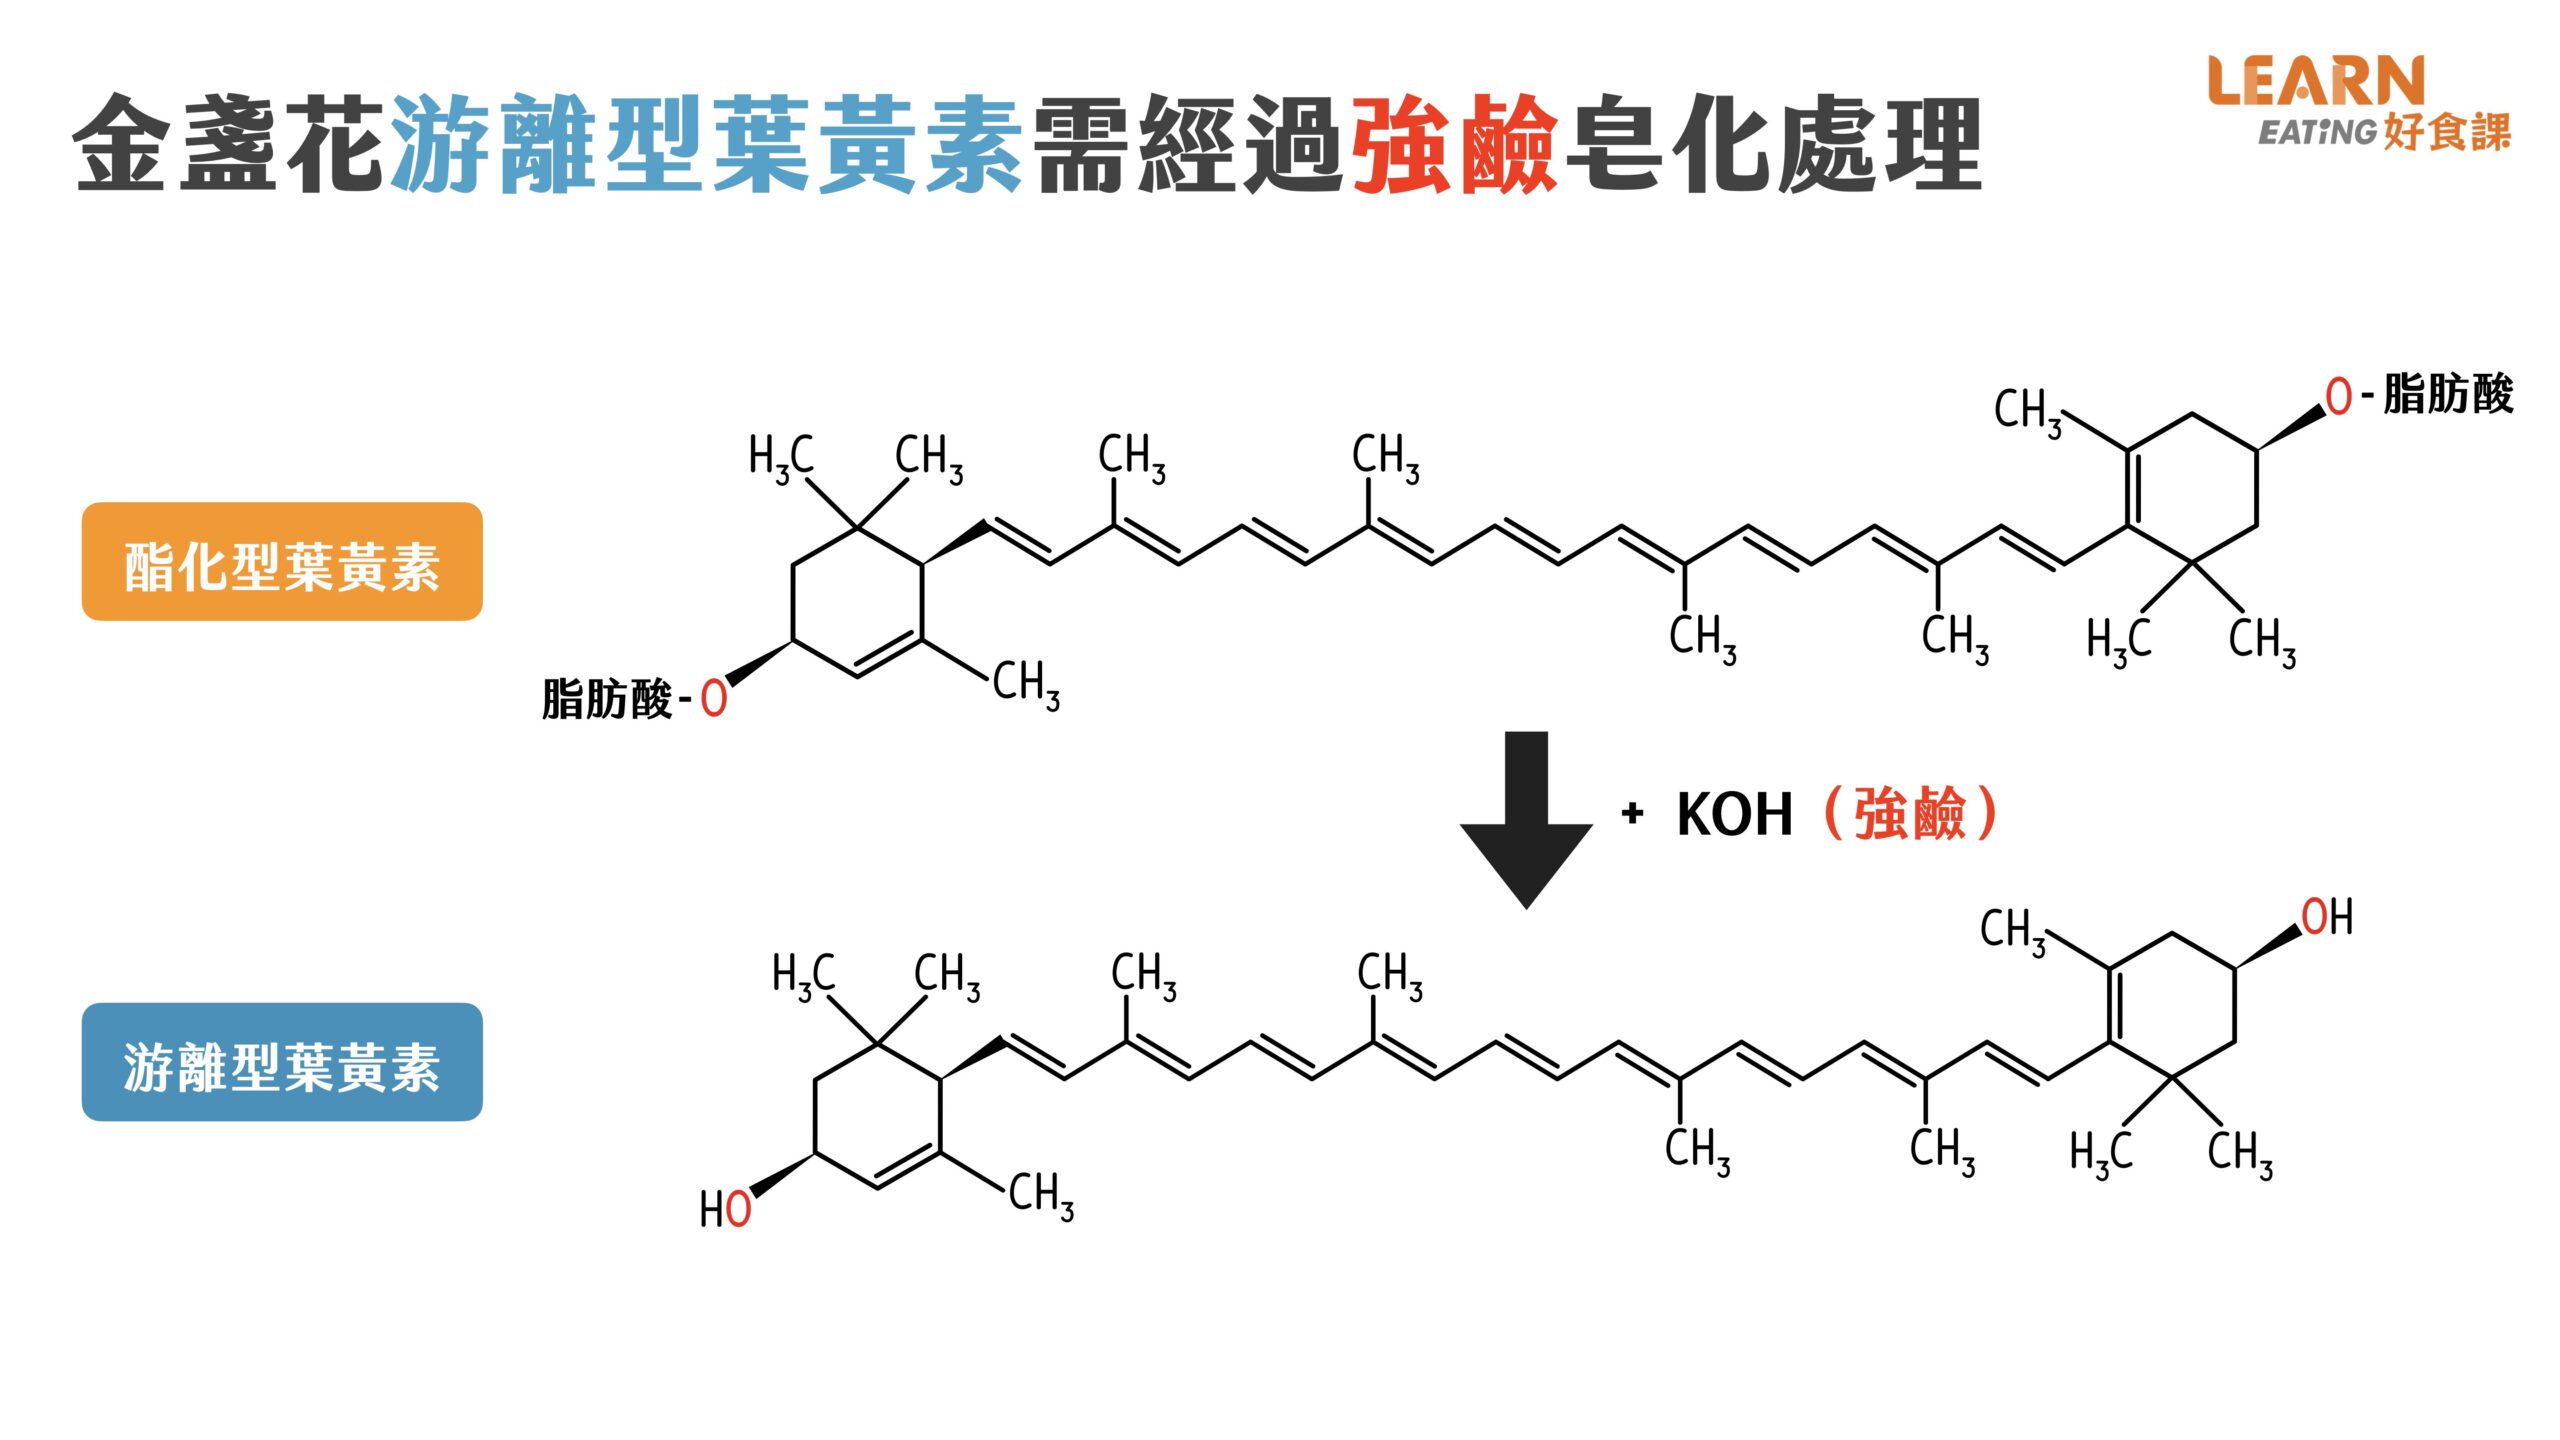 酯化型-游離型-結構-葉黃素-吸收